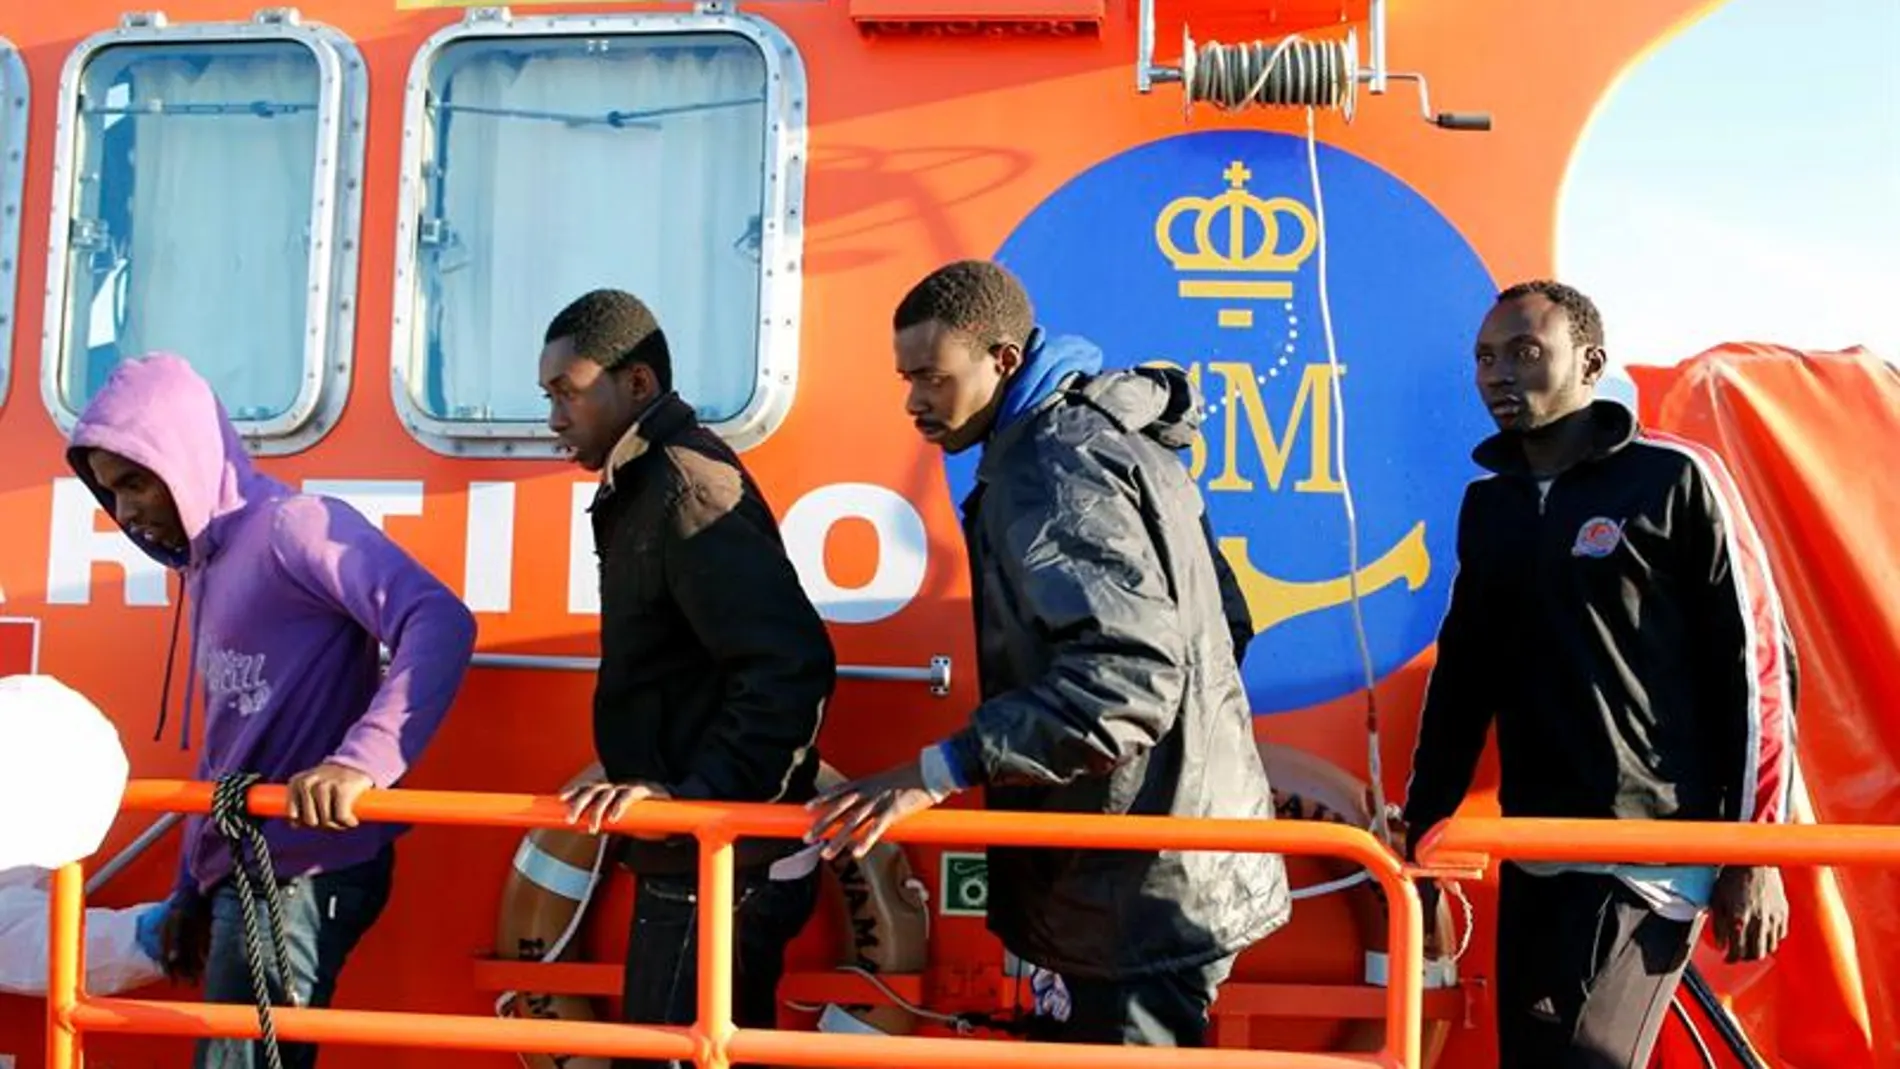 Inmigrantes rescatados por efectivos de Salvamento Marítimo